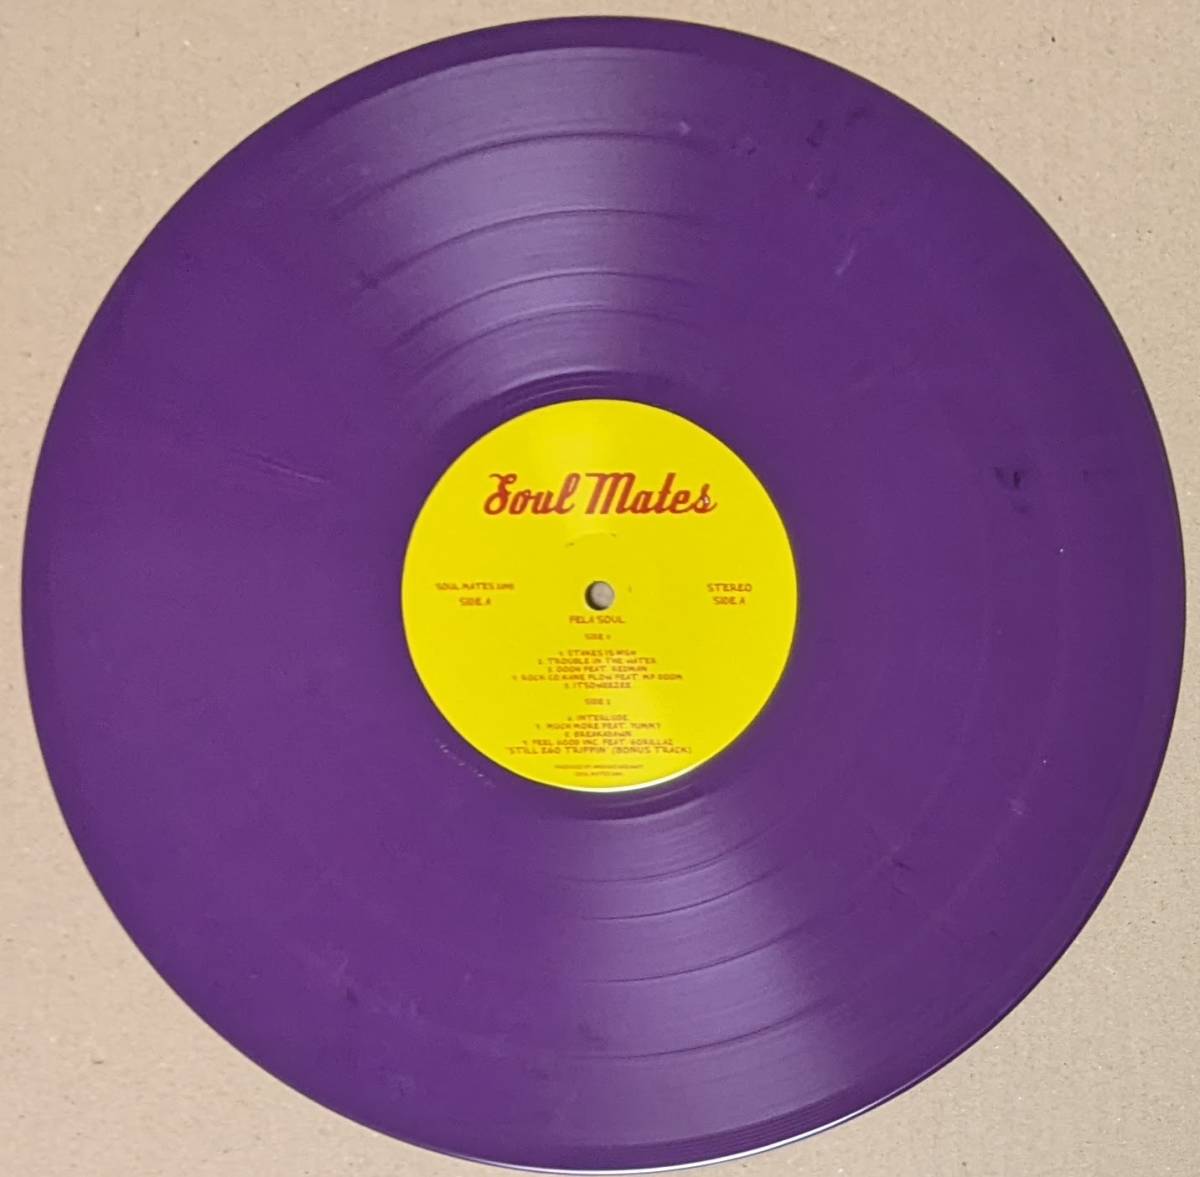 Amerigo Gazaway - Fela Kuti vs De La Soul - Fela Soul ボーナス・トラック1曲追加収録限定パープル・カラー・アナログ・レコードの画像3